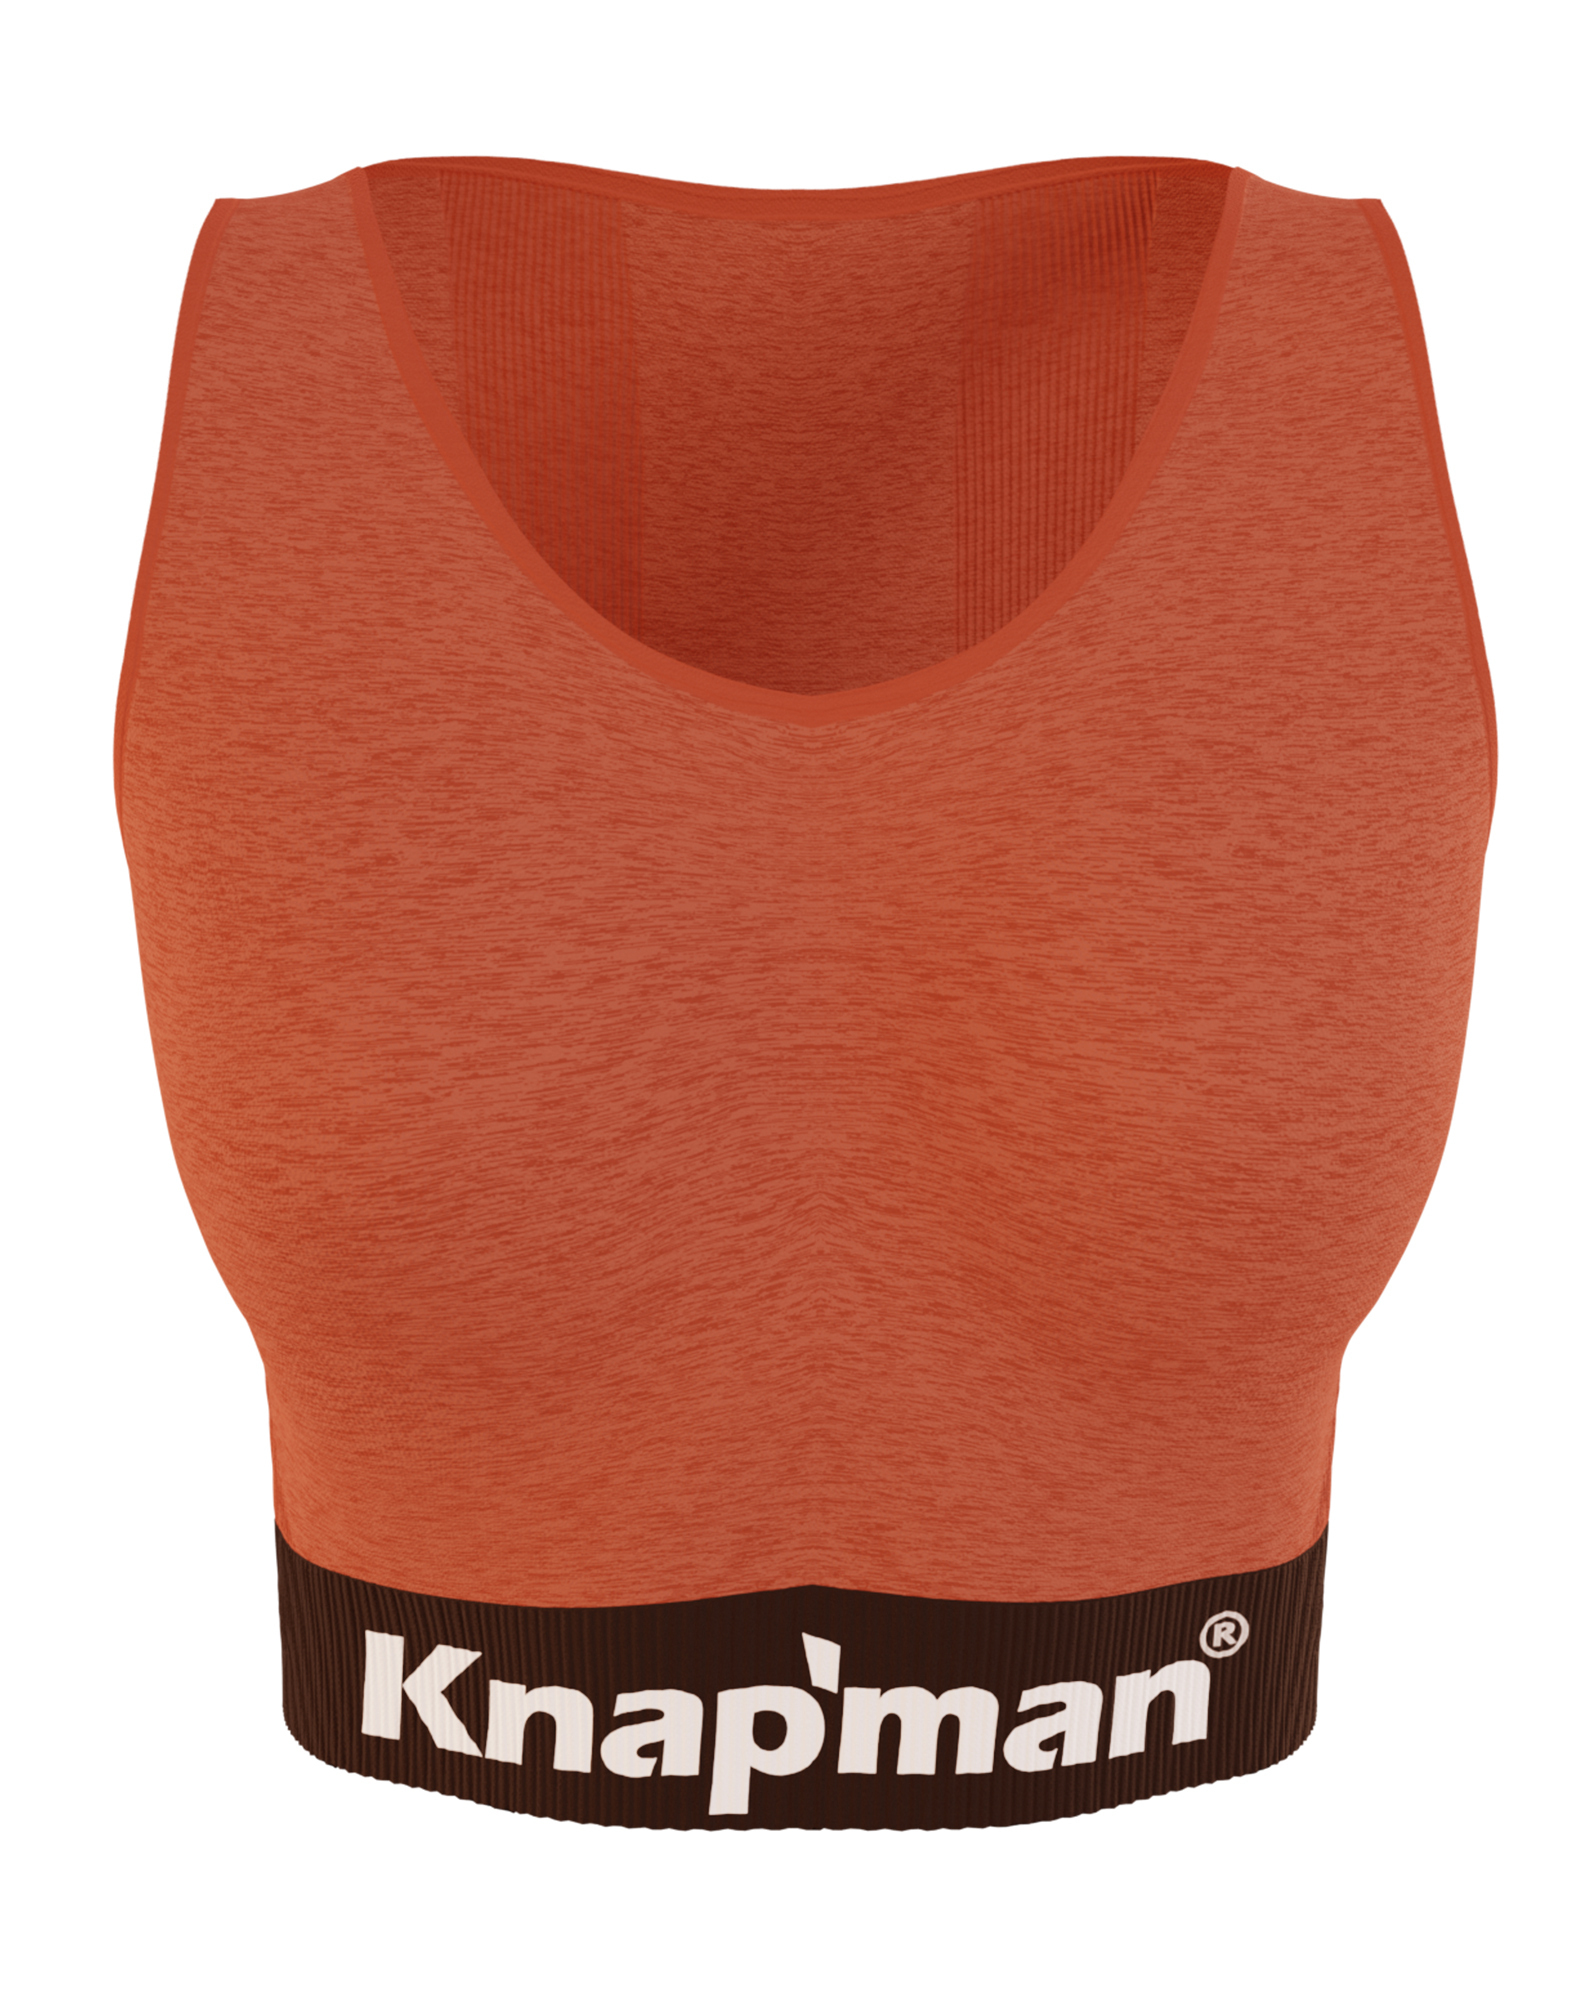 Knap'man FitForm Compression Sport Top | Orange Melange